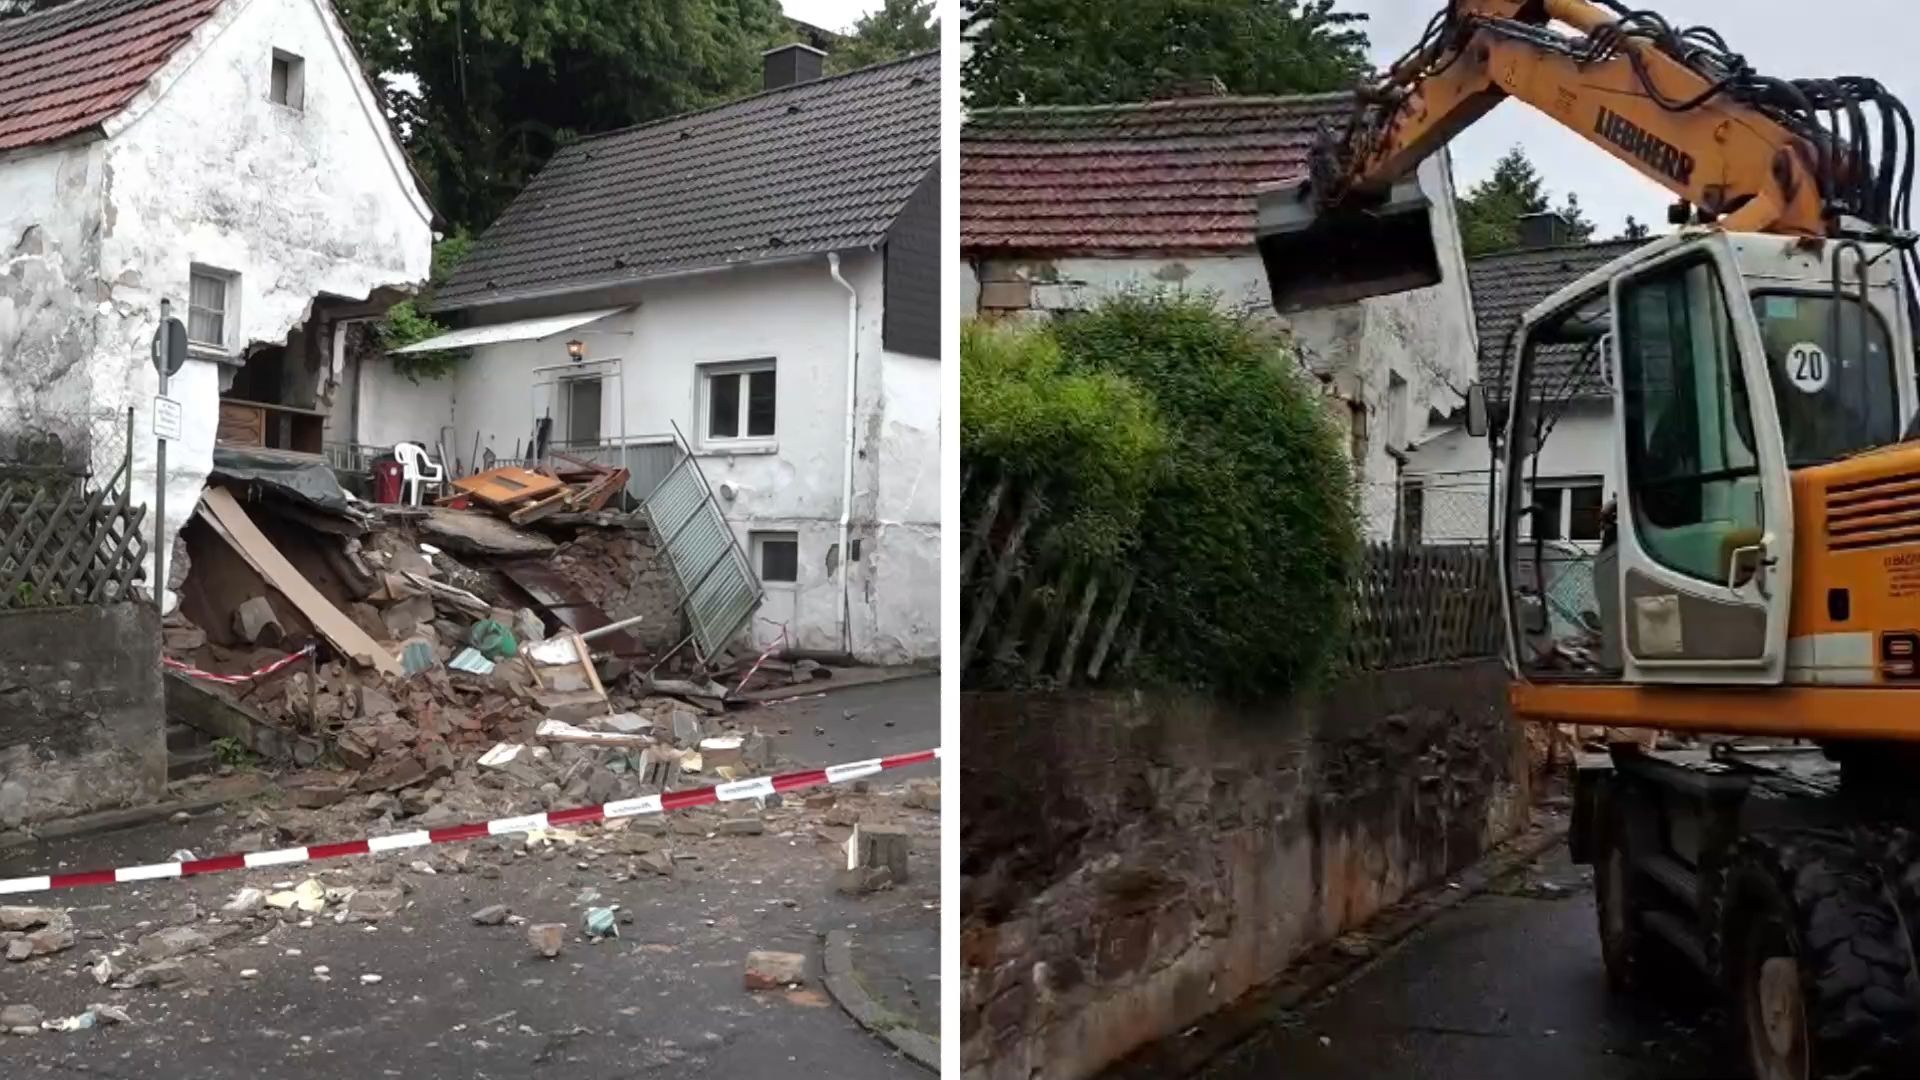 Hundert Jahre altes Haus eingestürzt: Eigentümer stimmt nach Unglück Abriss zu